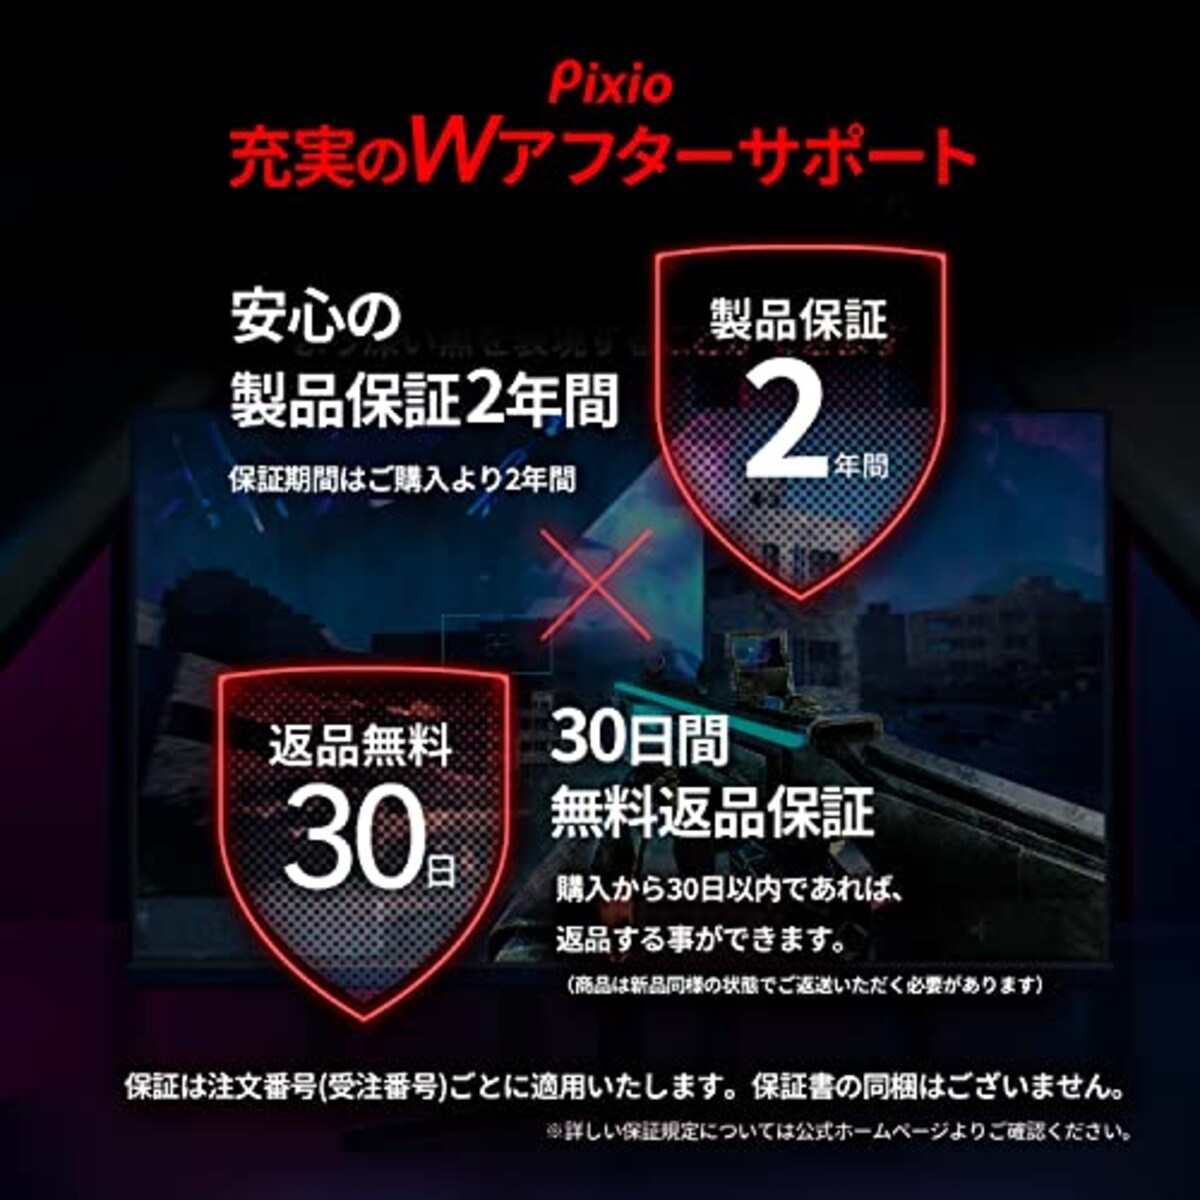  Pixio PX248 Prime ゲーミングモニター 23.8インチ FHD IPS 144Hz 1ms スピーカー内蔵 2年保証画像6 